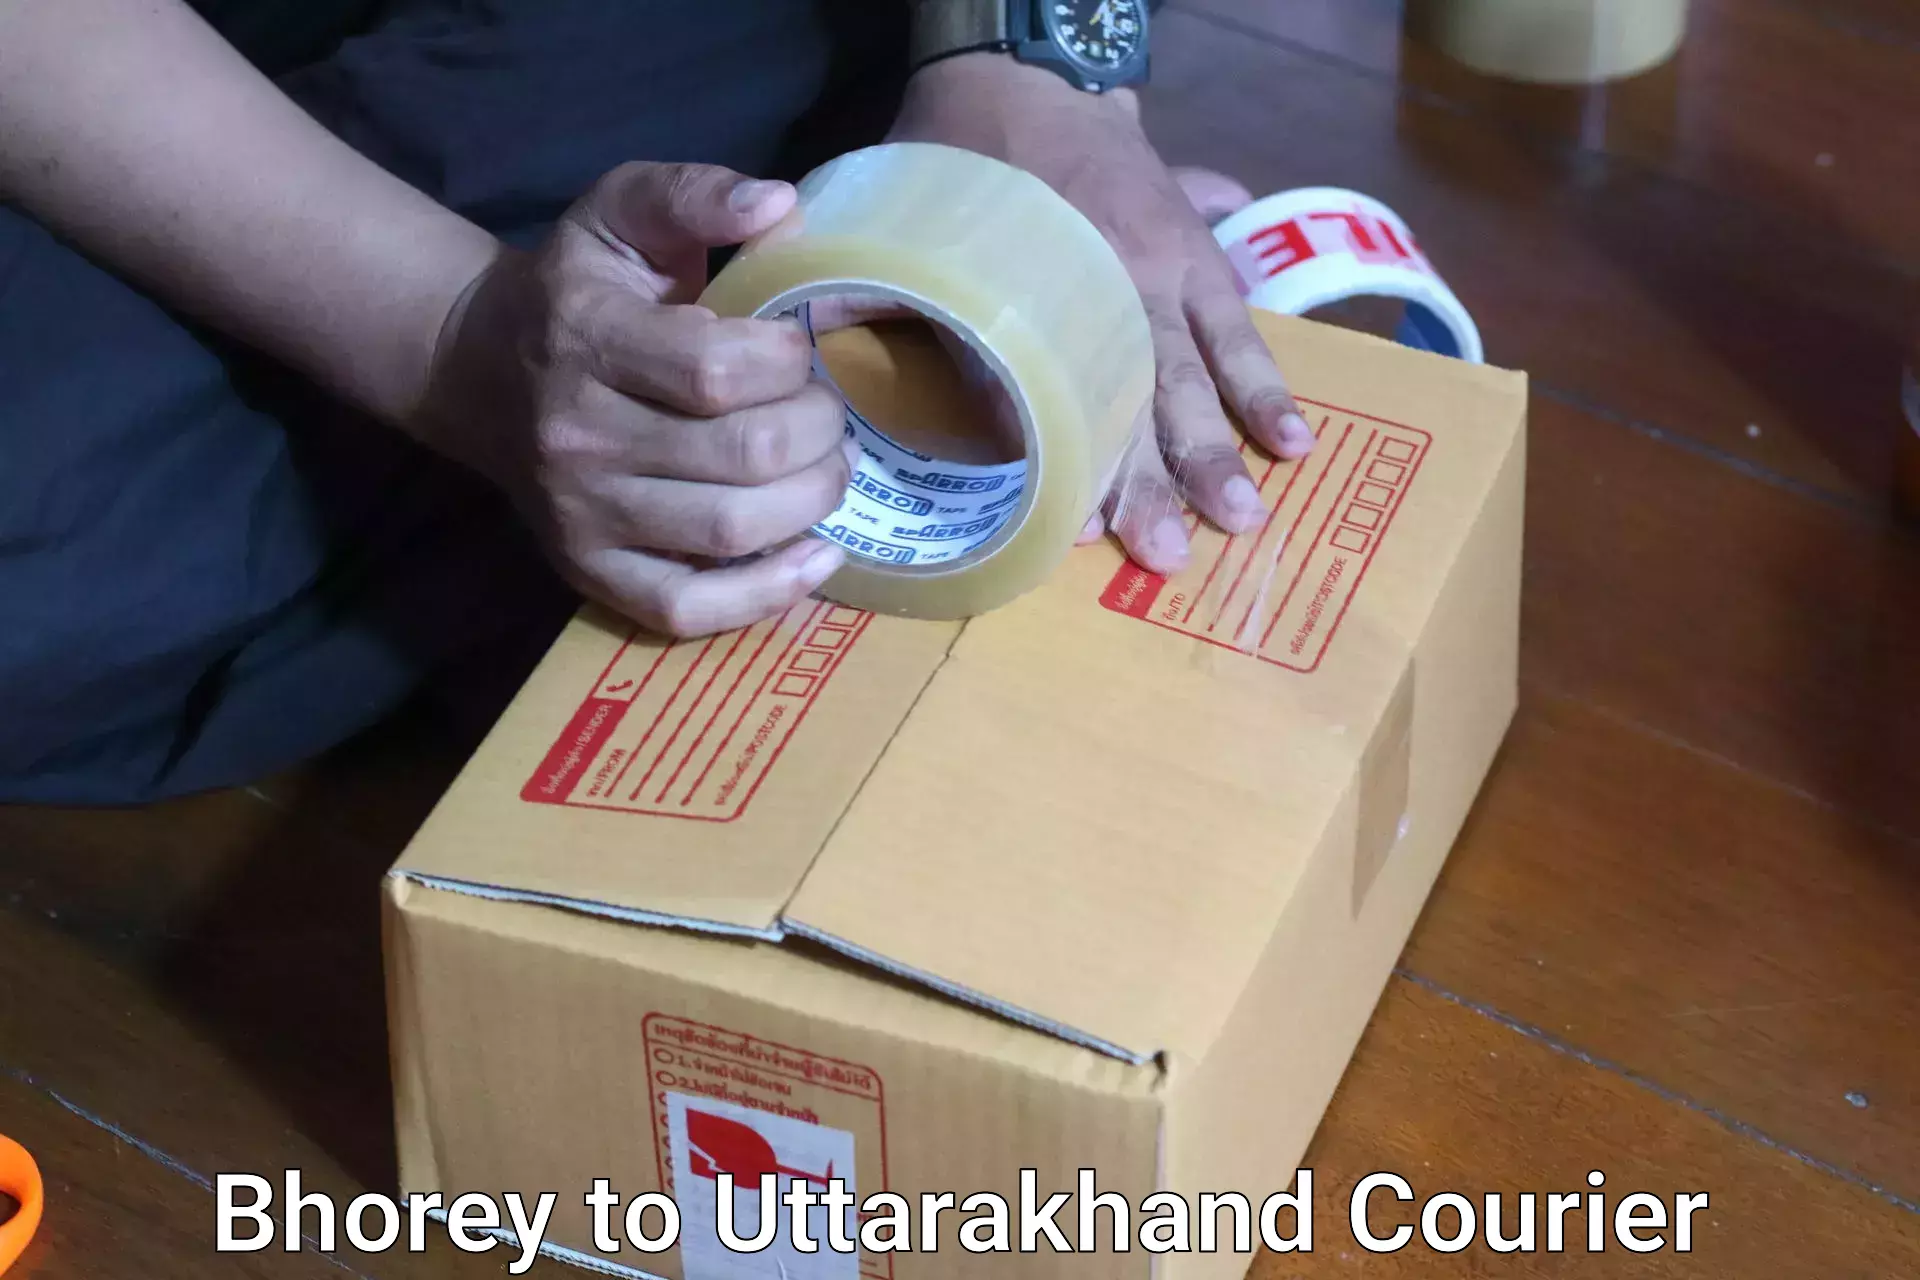 Luggage shipping planner Bhorey to Uttarakhand